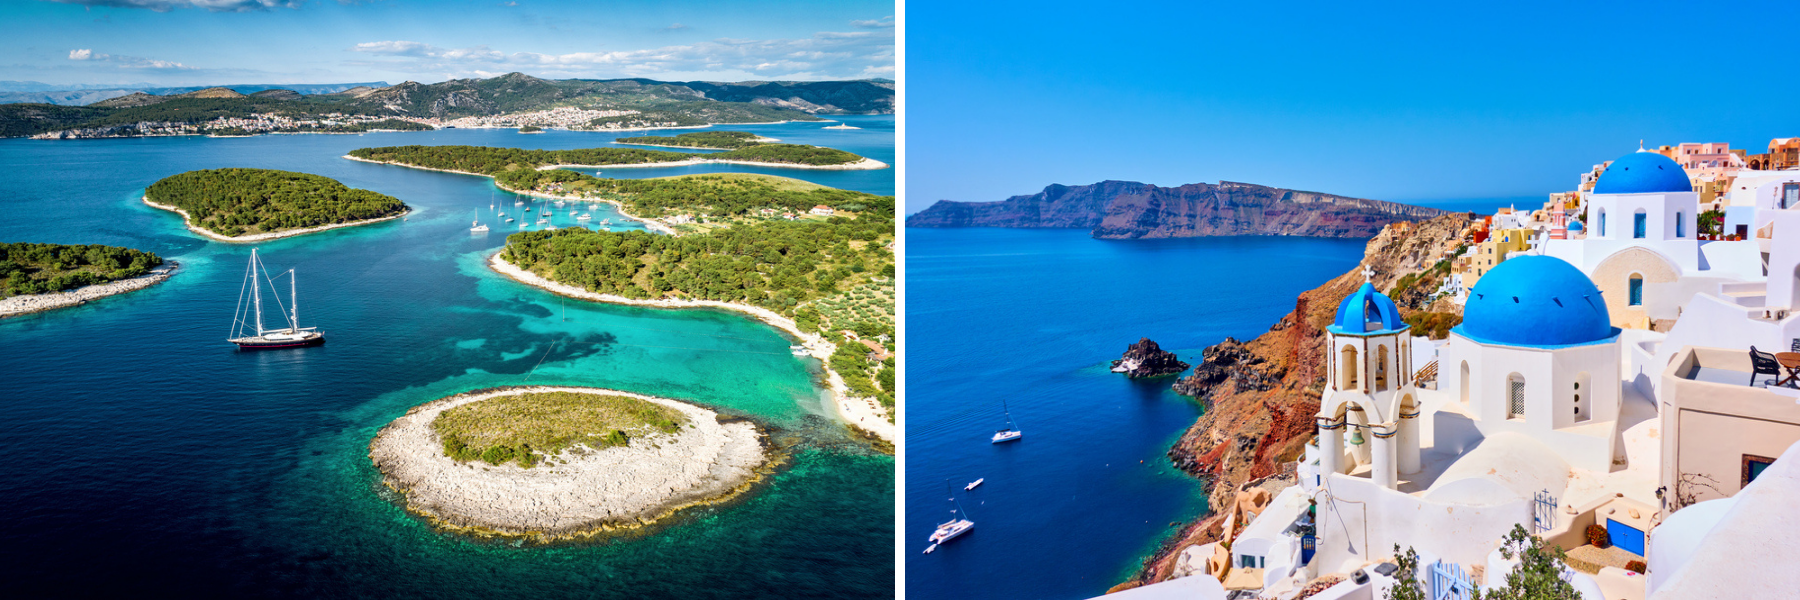 Kroatien und Griechenland sind Inselstaaten.